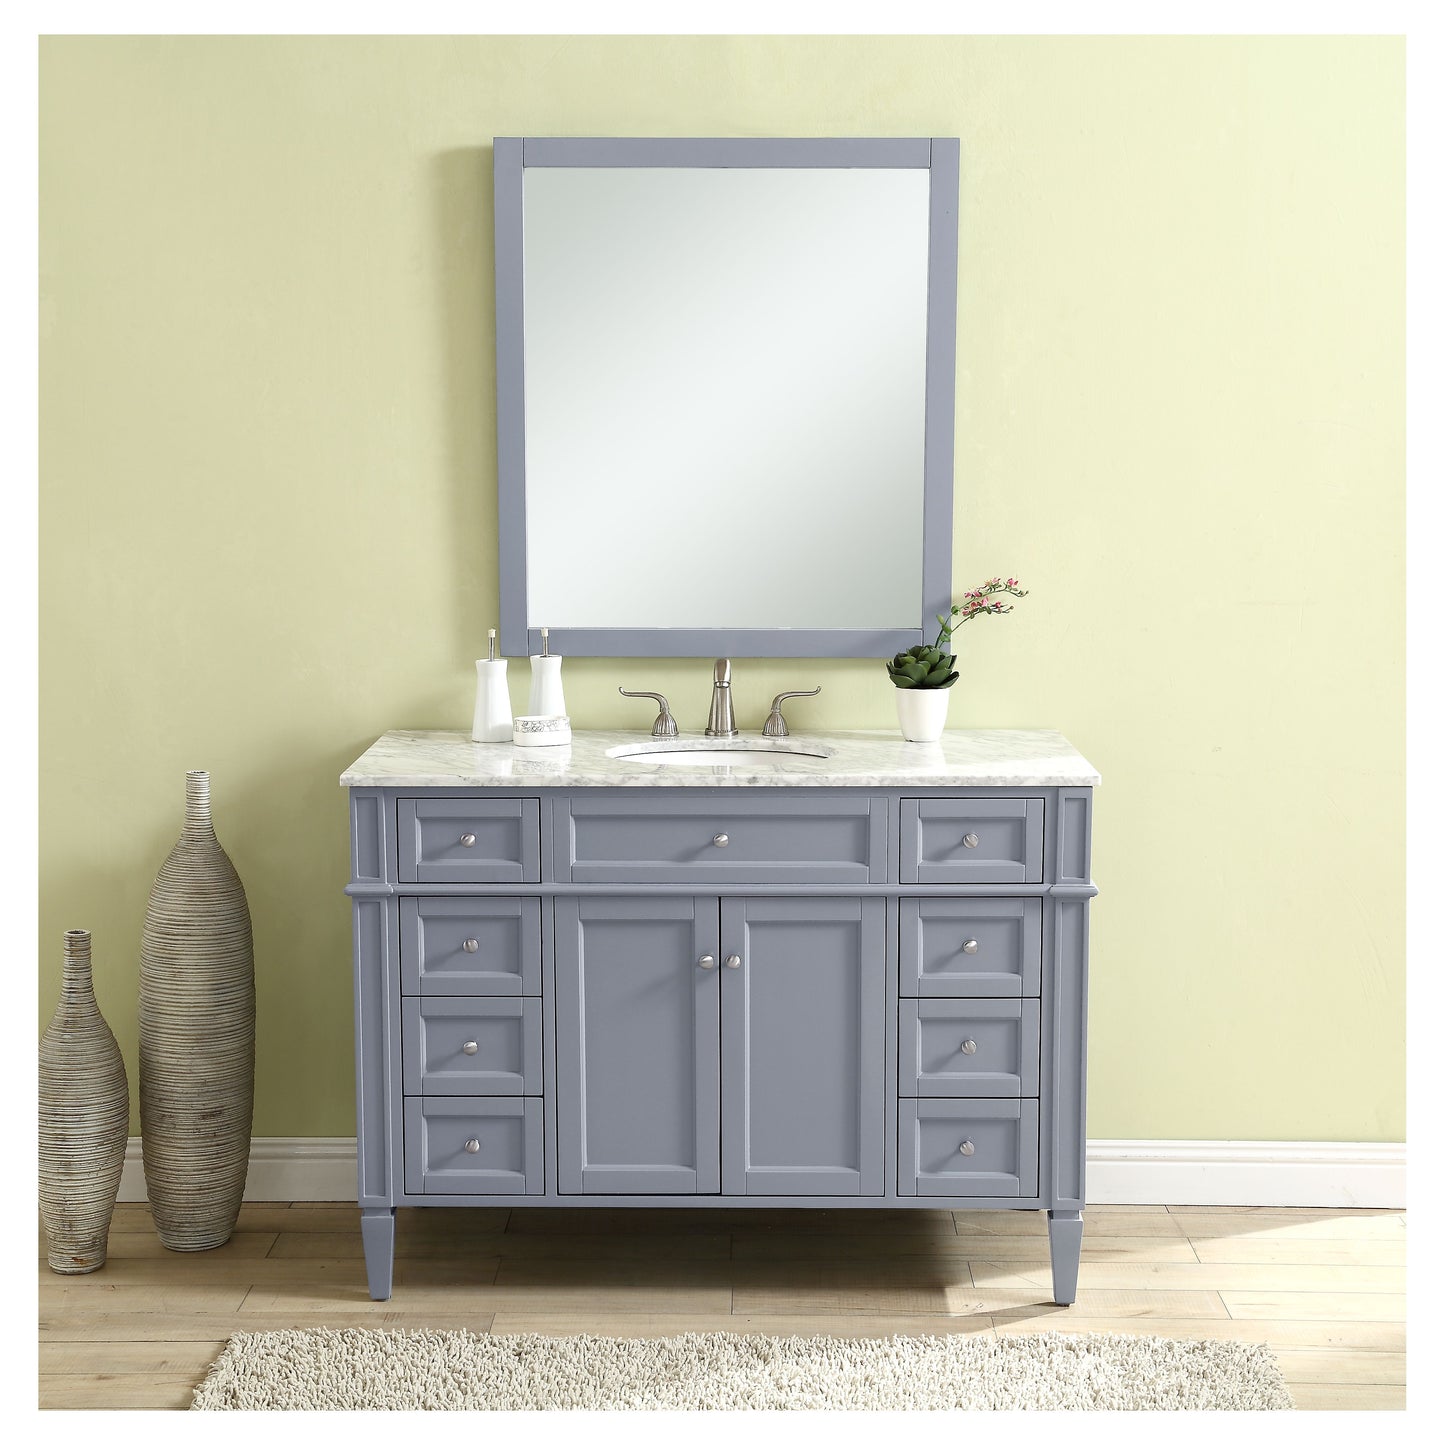 VF12548GR 48" Single Bathroom Vanity Set in Grey